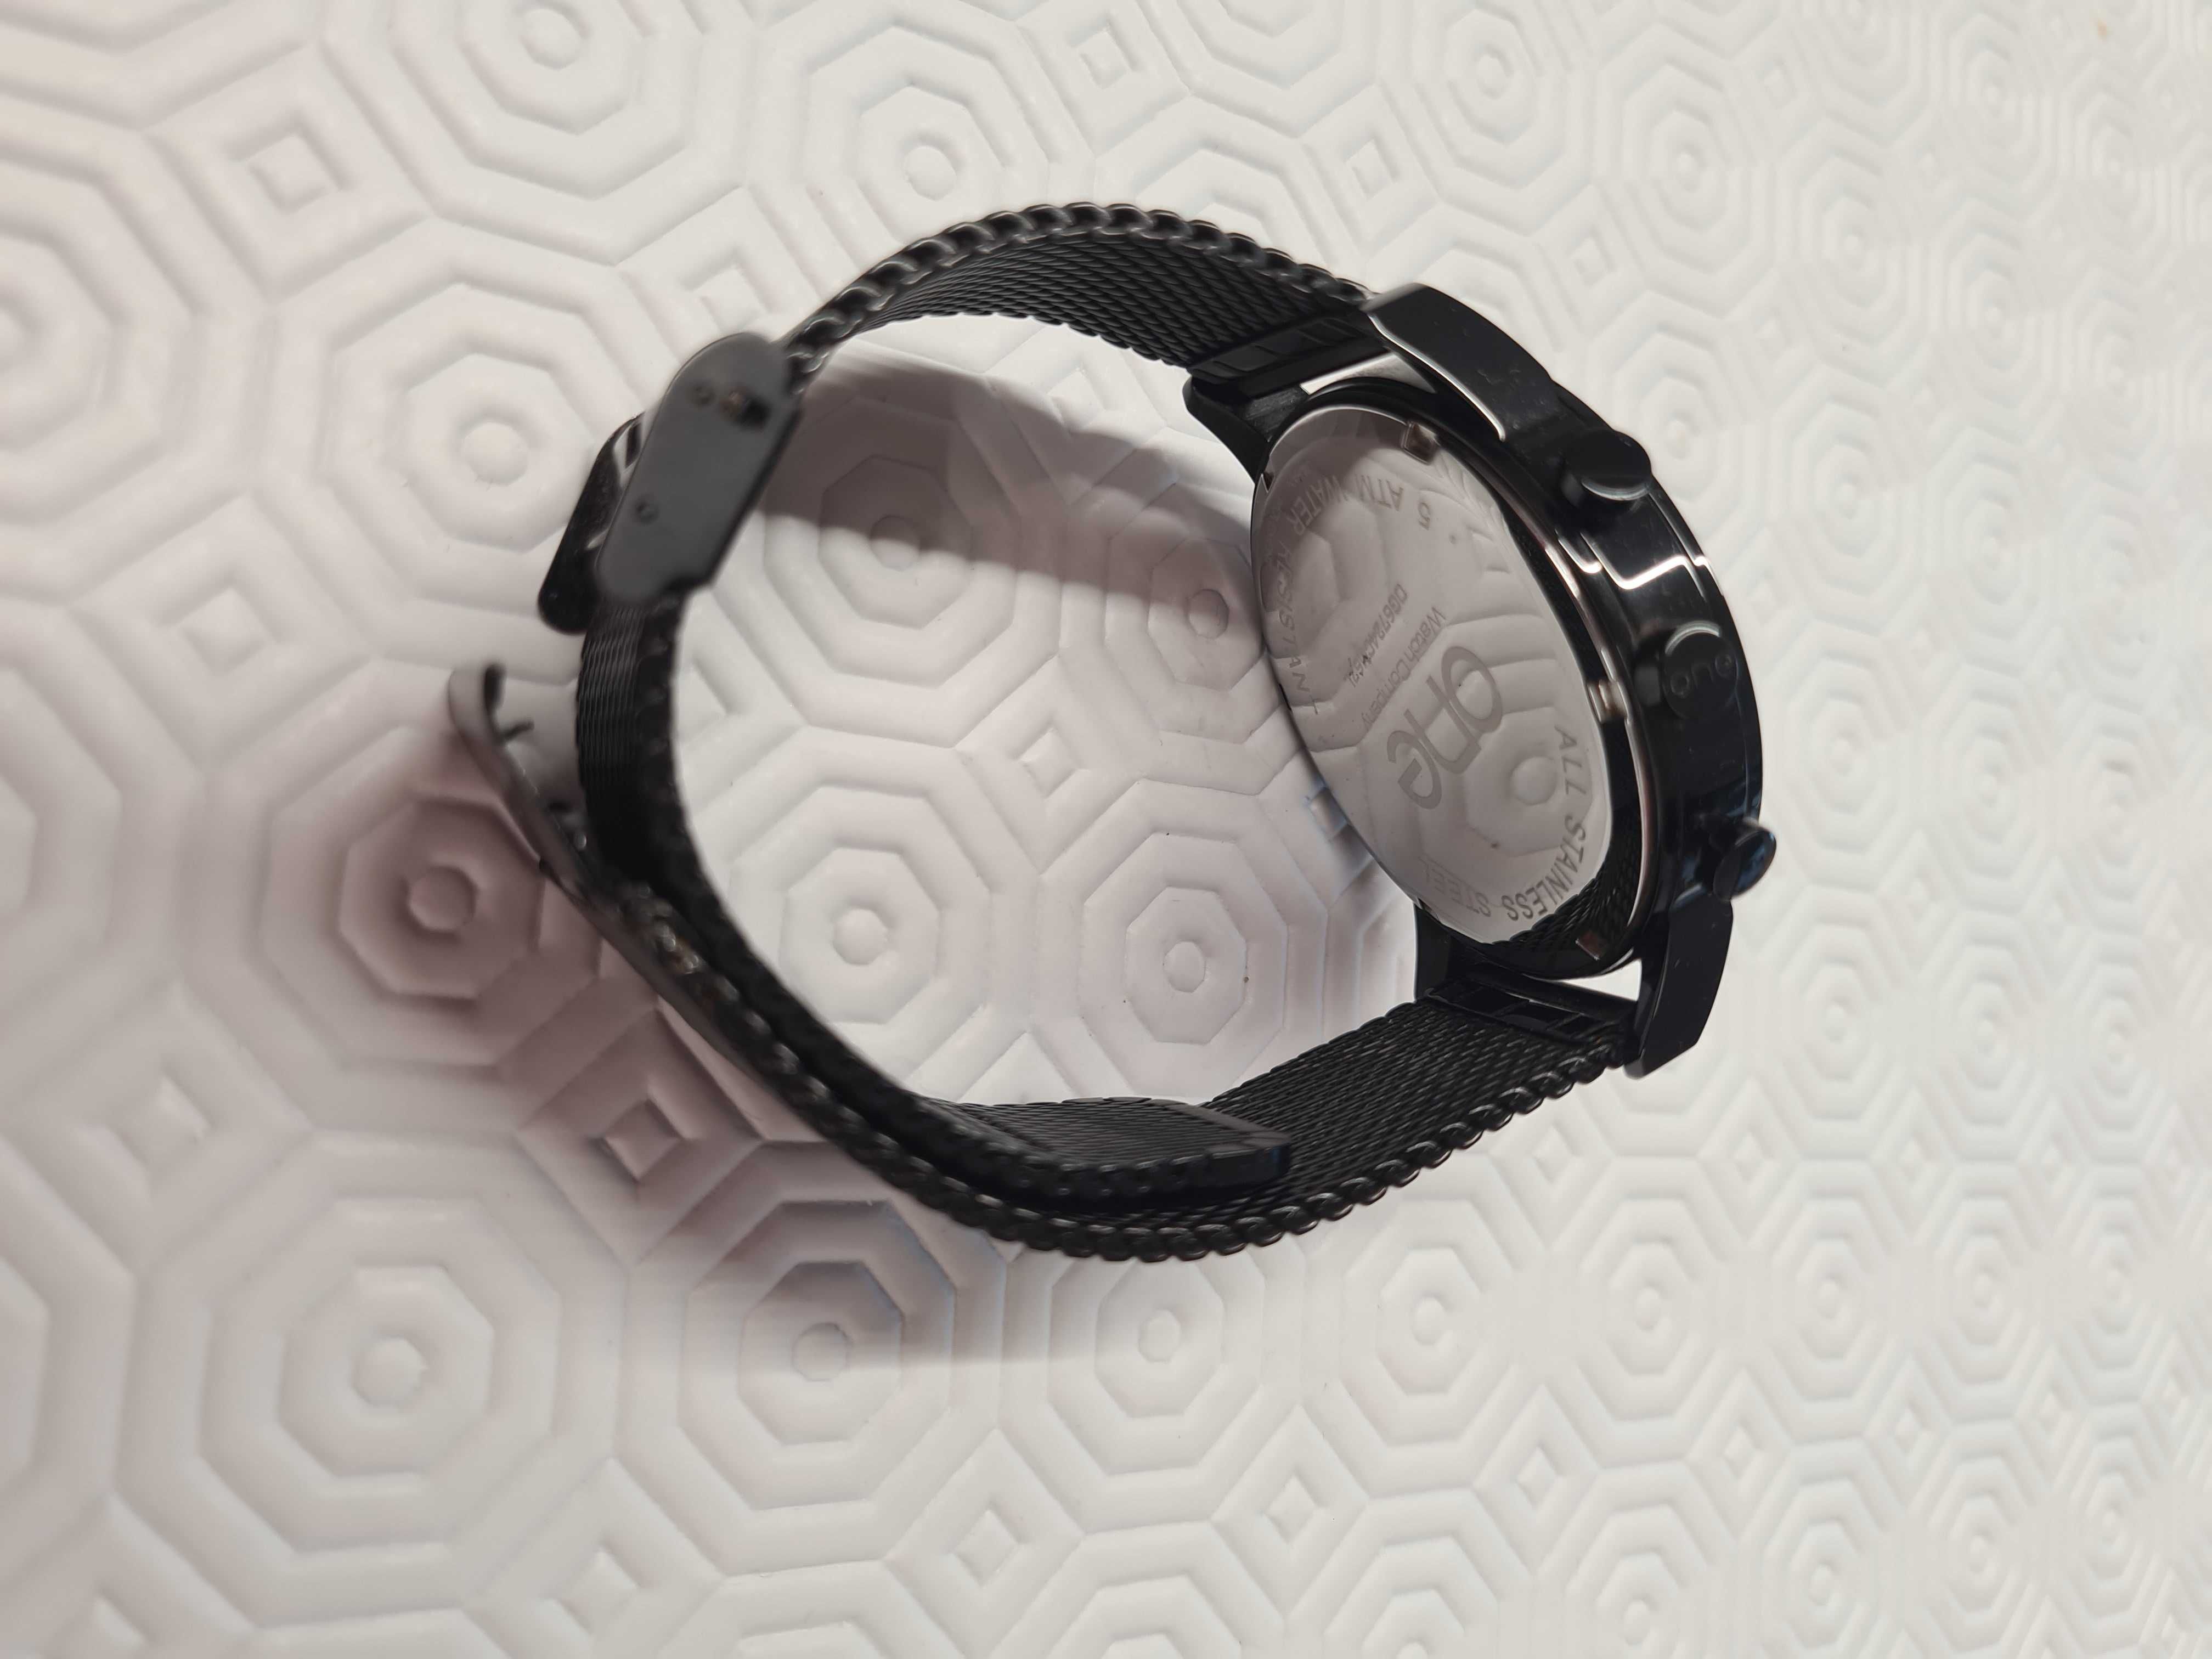 Relógio One de homem, em preto, bracelete aço